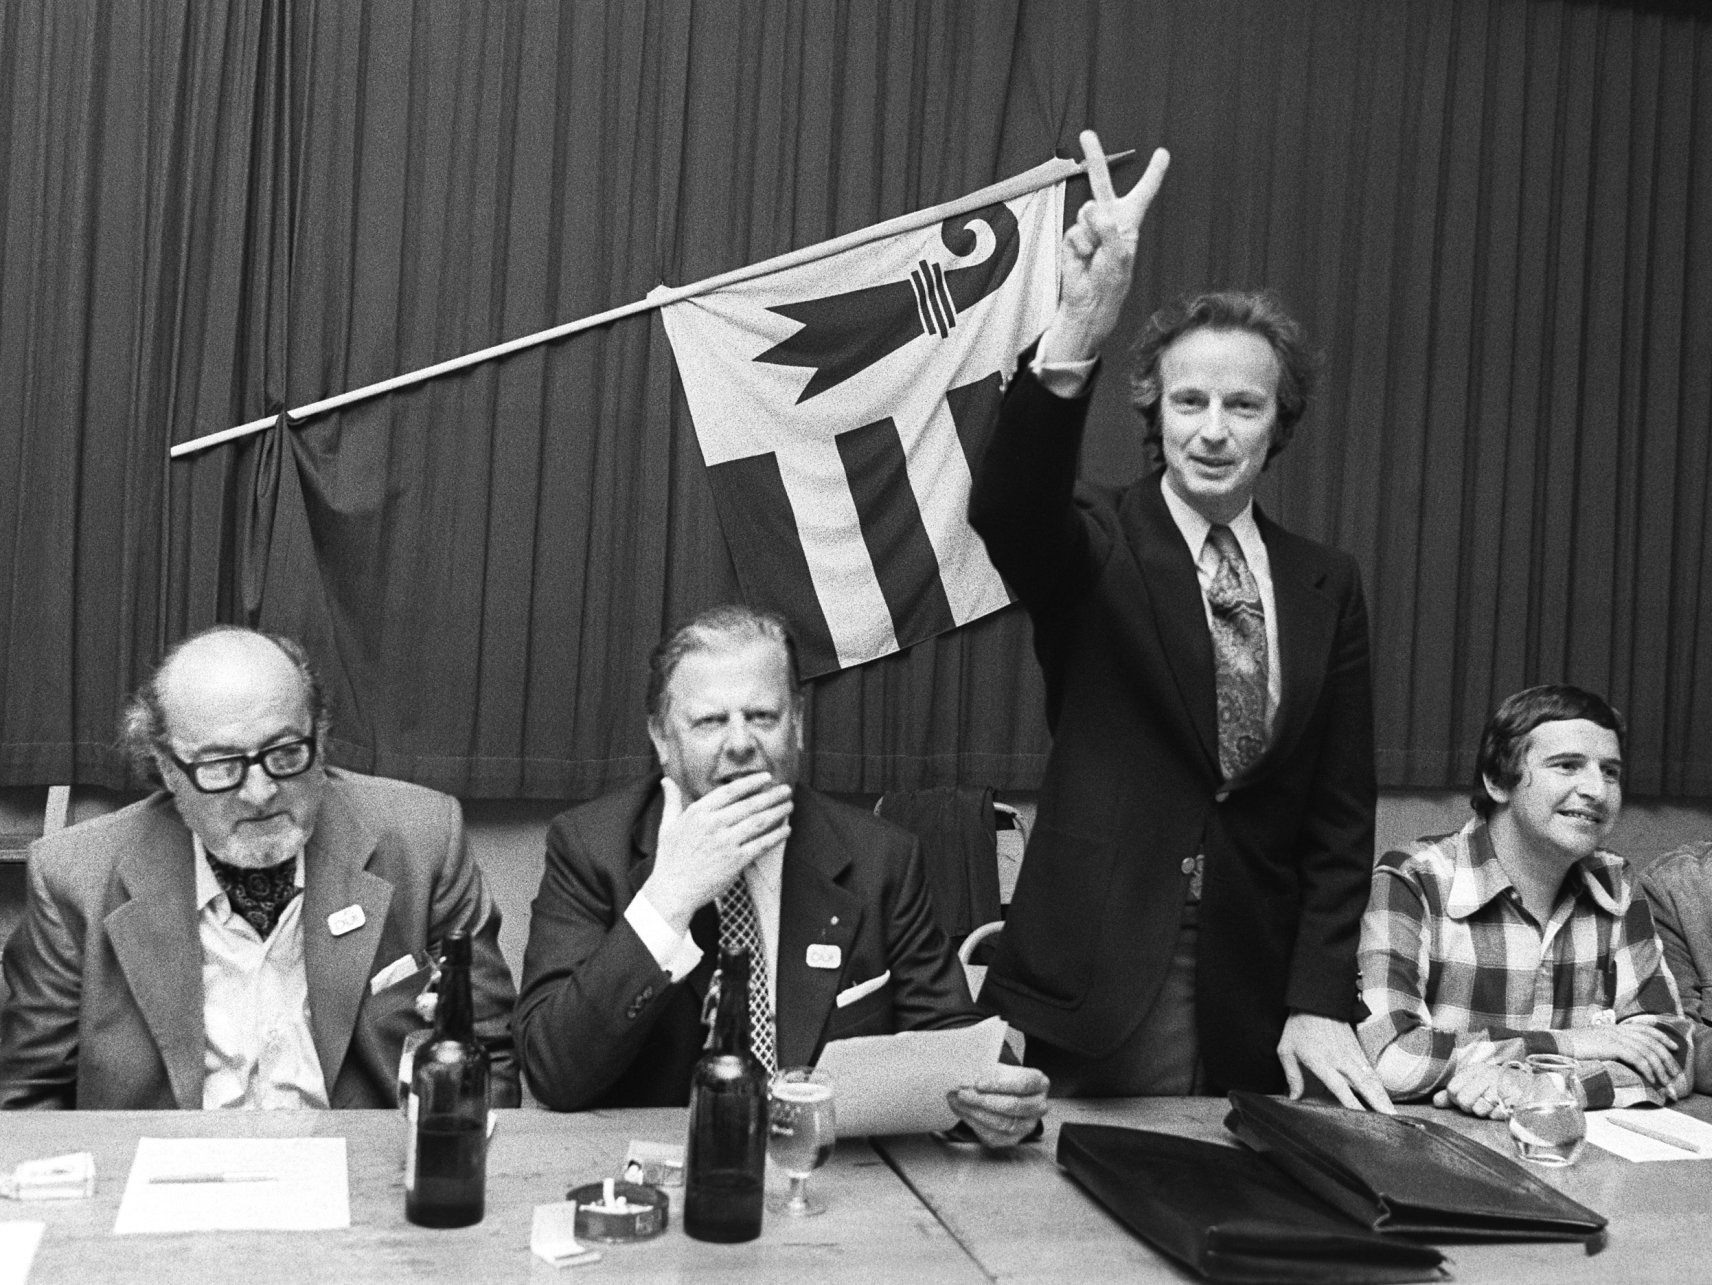 Roger Schaffter (à gauche) le soir du 23 juin 1974 aux côtés des des autres dirigeants du Rassemblement jurassien, dont Roland Béguelin (debout, au centre).